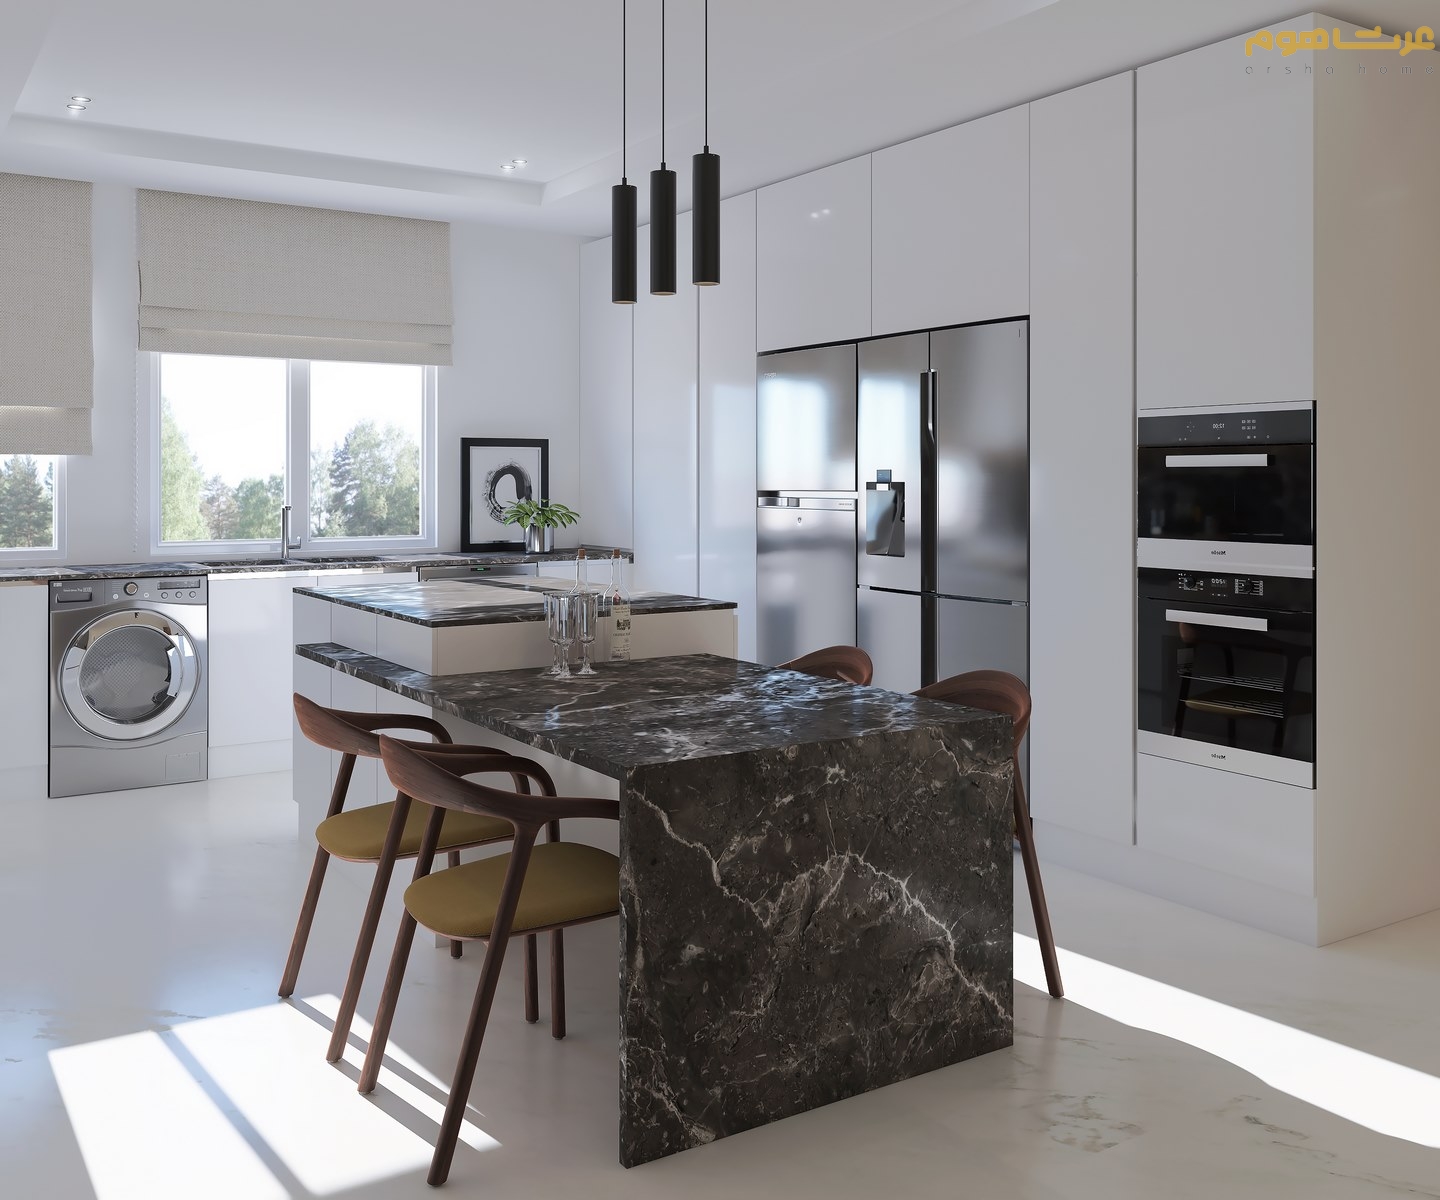 طراحی داخلی جزیره آشپزخانه پیروزی به سبک مدرن